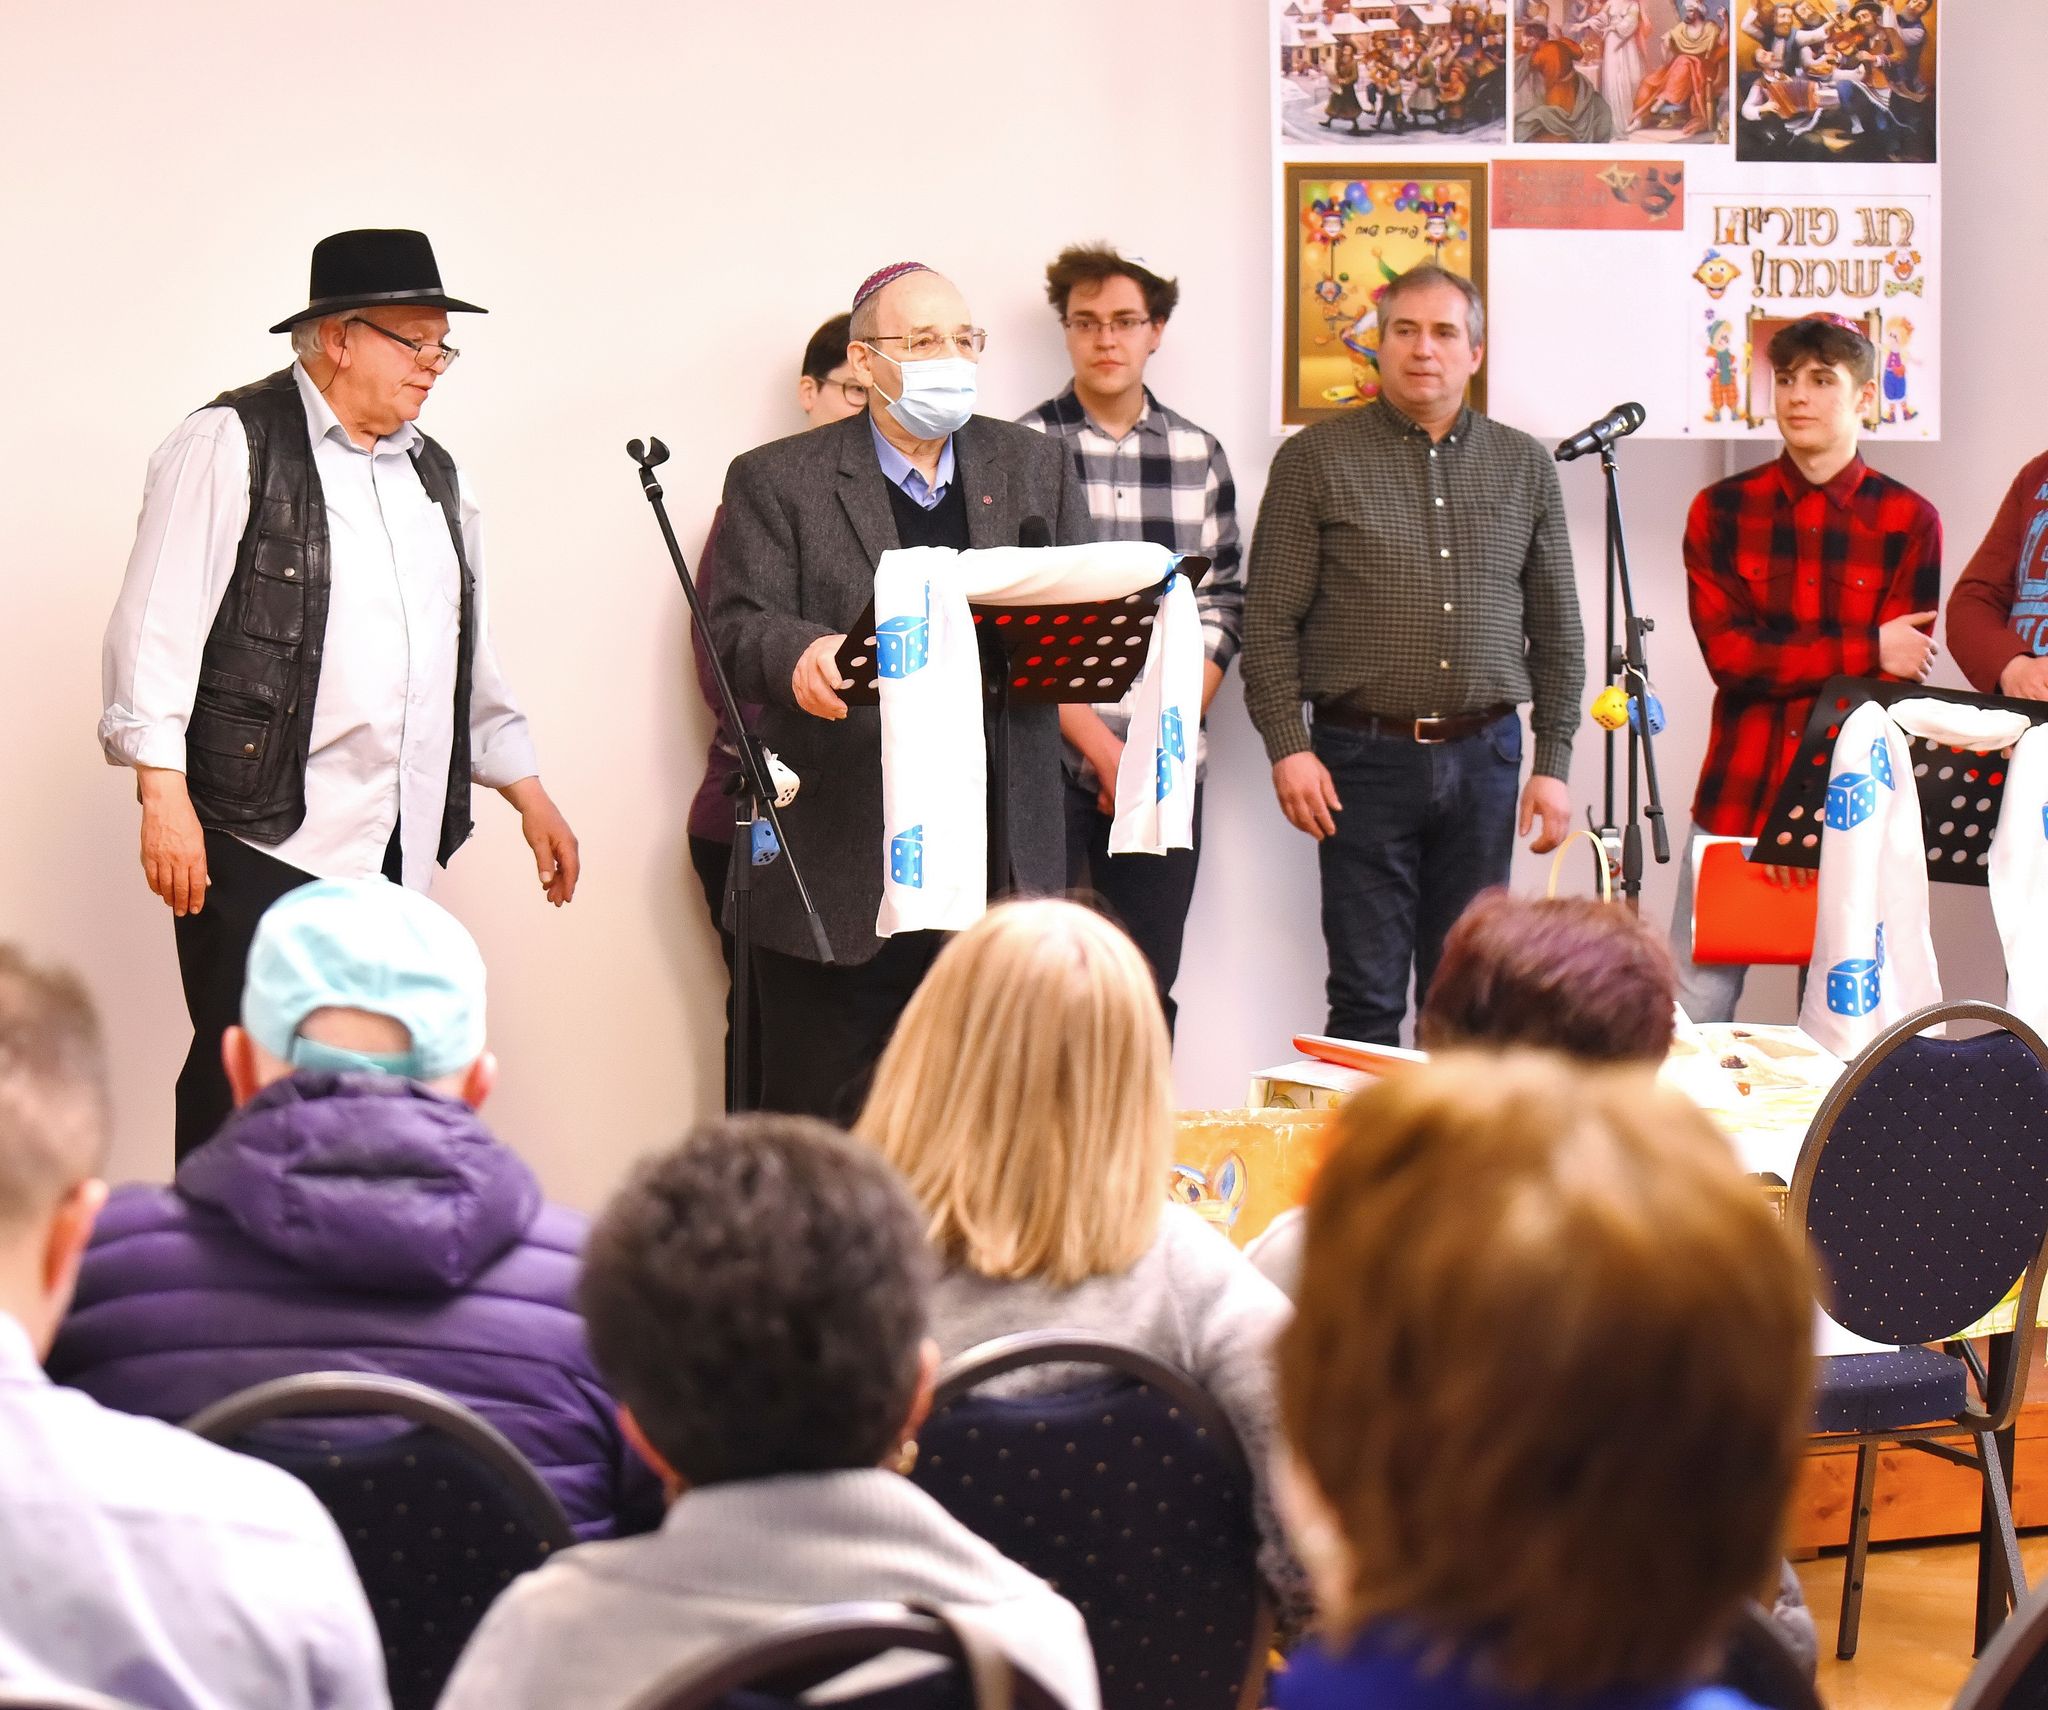 Purimot ünnepelt a kolozsvári zsidóság